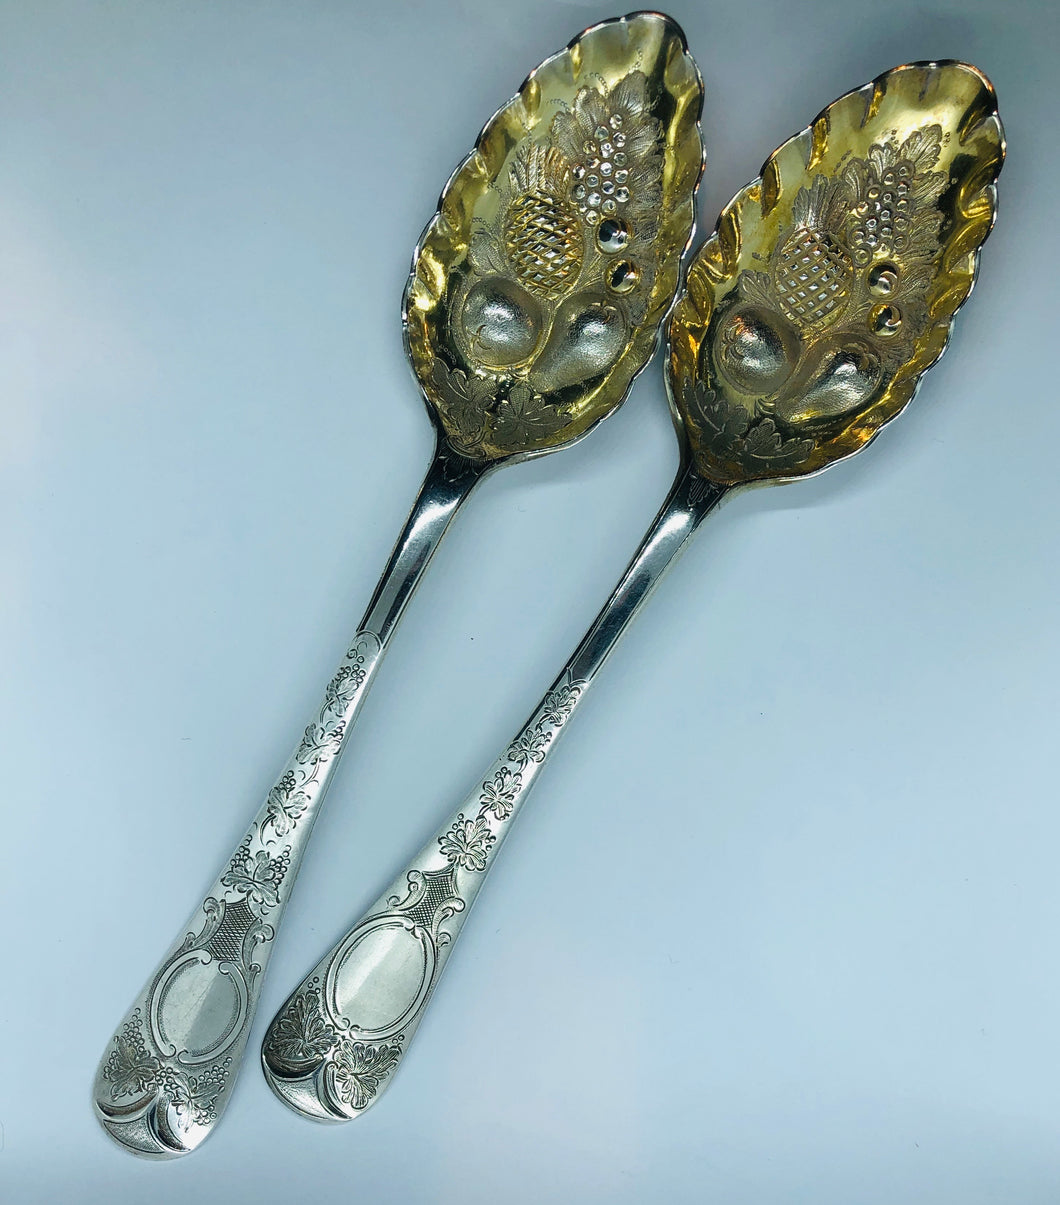 Antica coppia di berry spoon sbalzata, cesellata e dorata